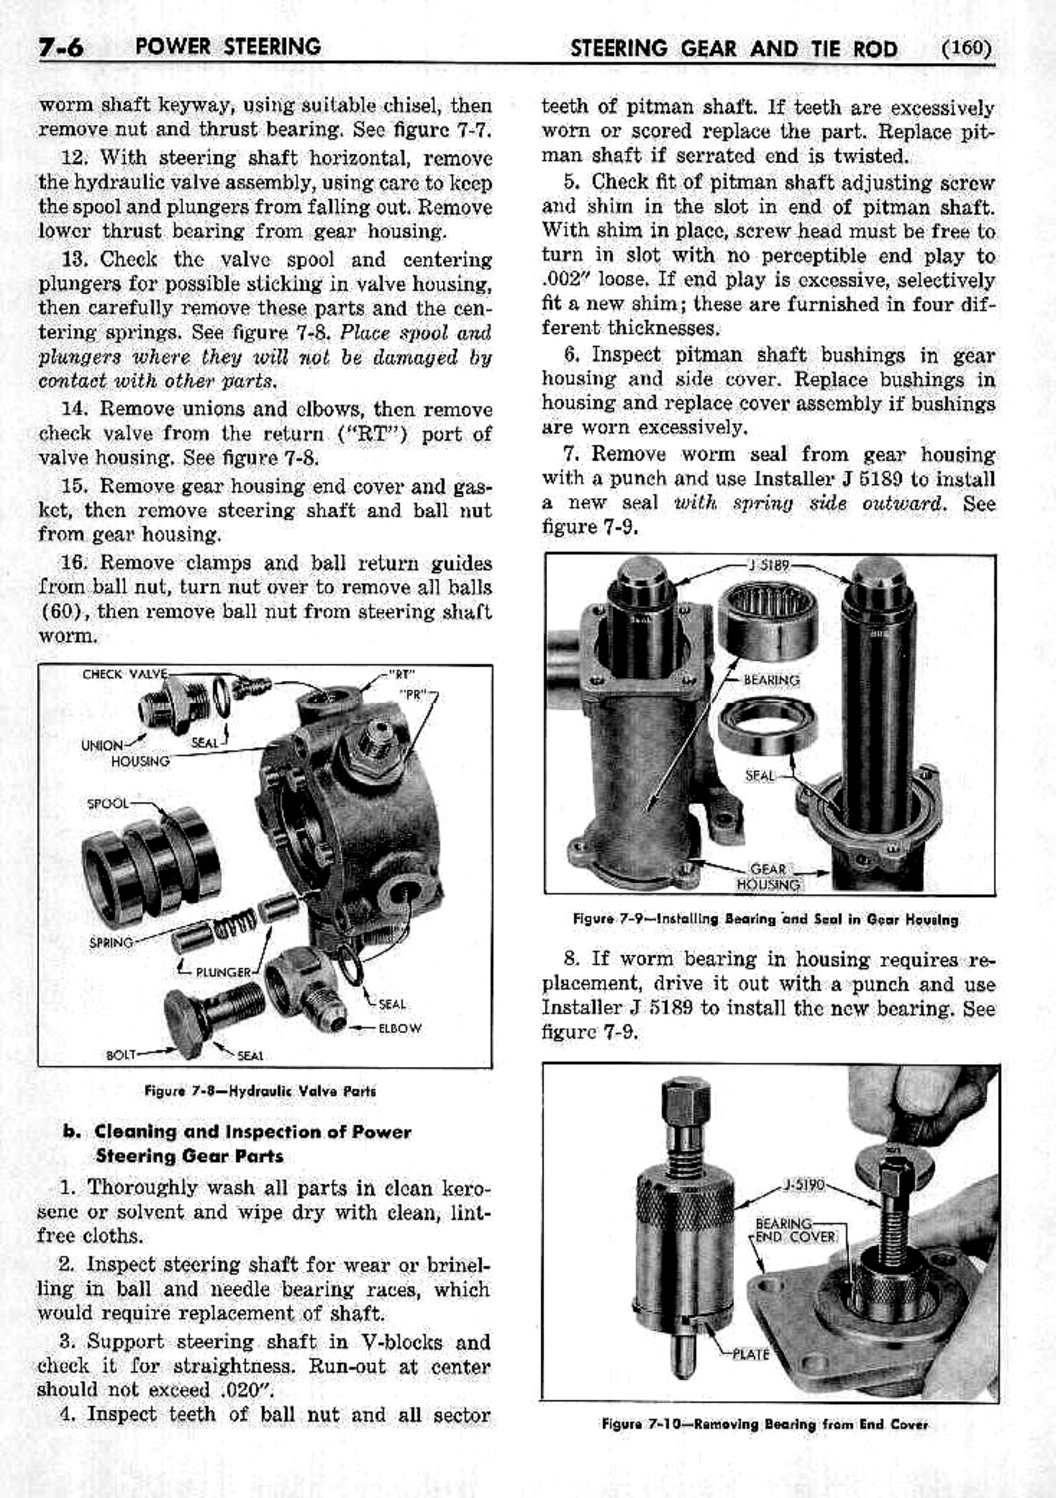 n_08 1953 Buick Shop Manual - Steering-006-006.jpg